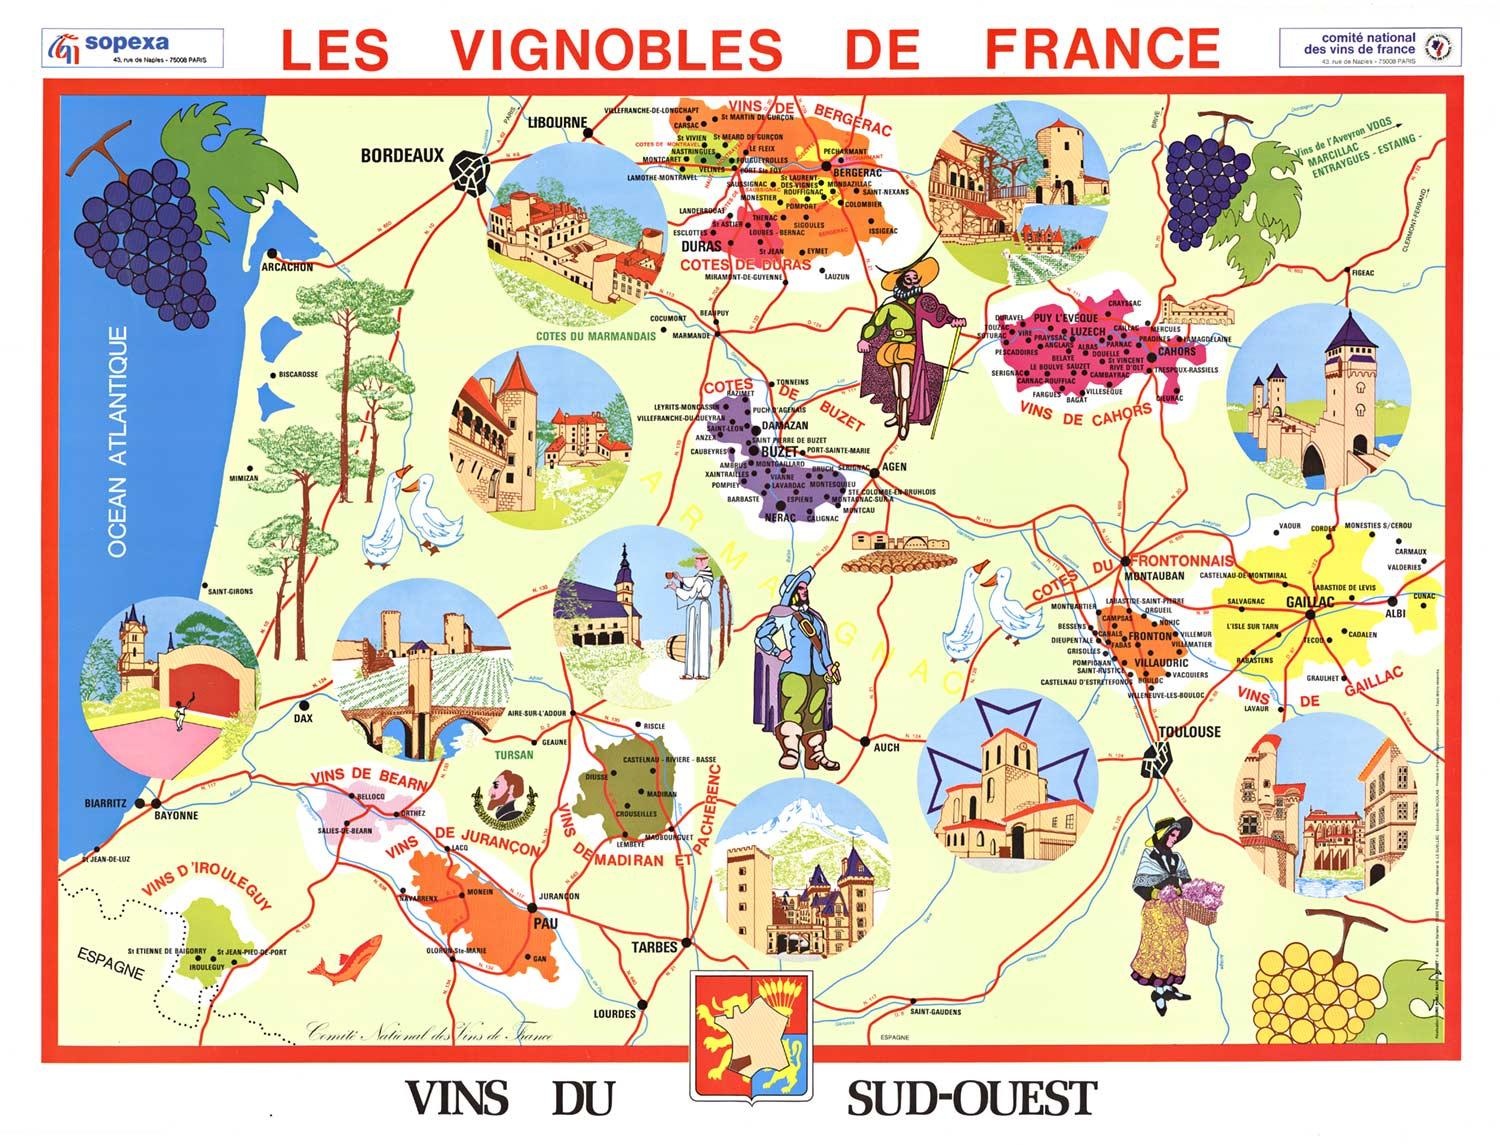 Original Vins du Sud-Ouest vintage French wine map poster